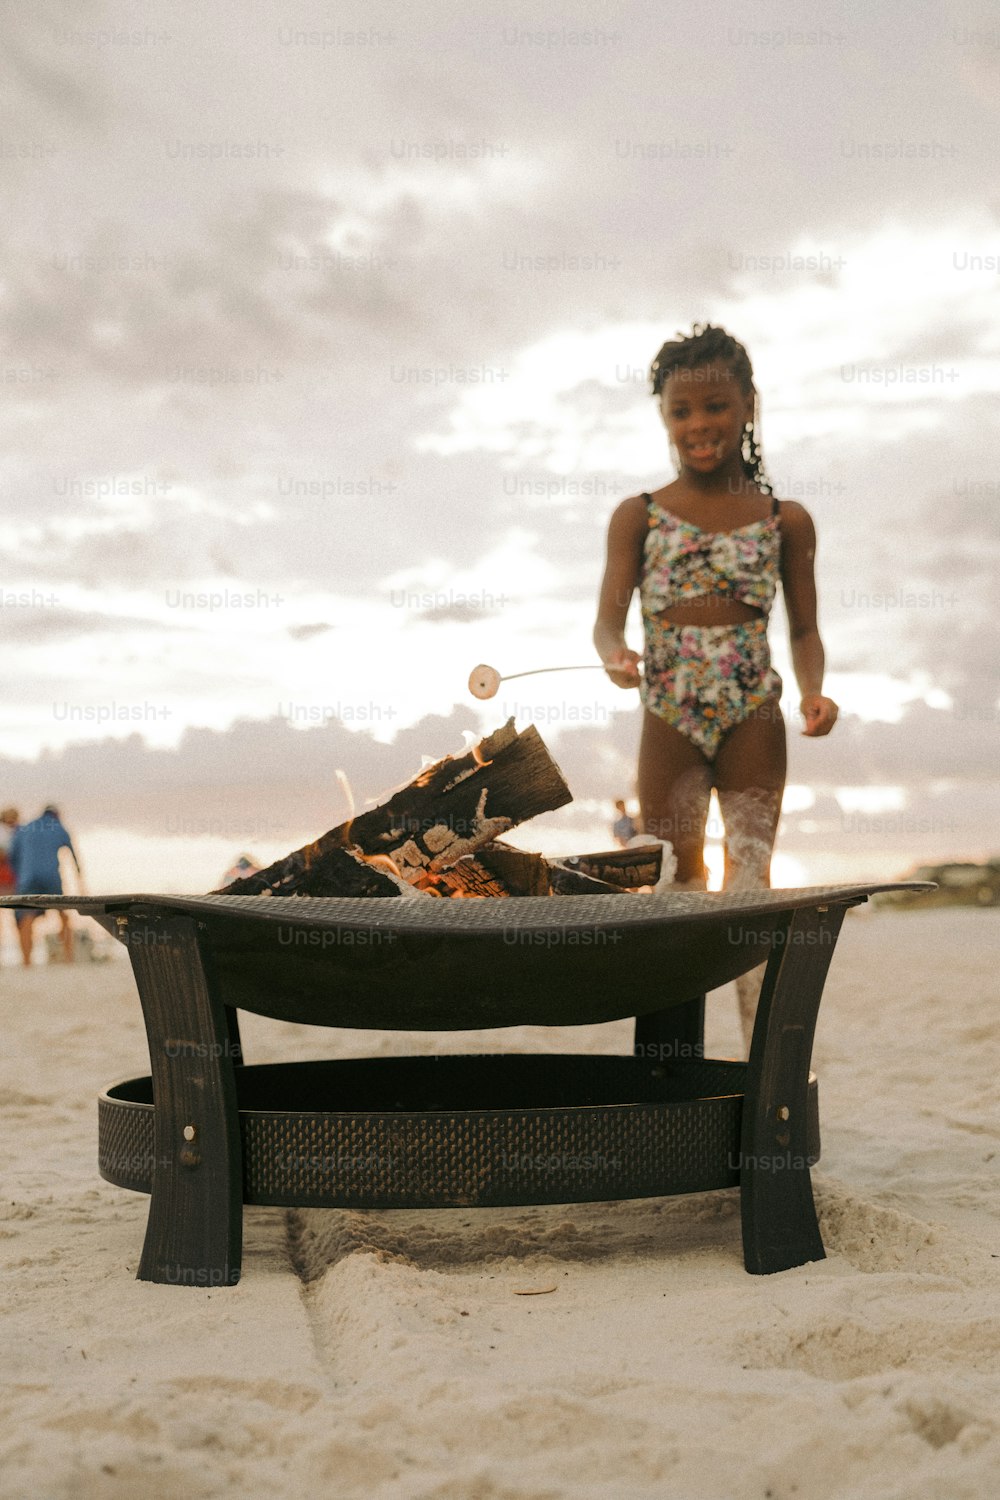 Una niña parada en una playa junto a una parrilla